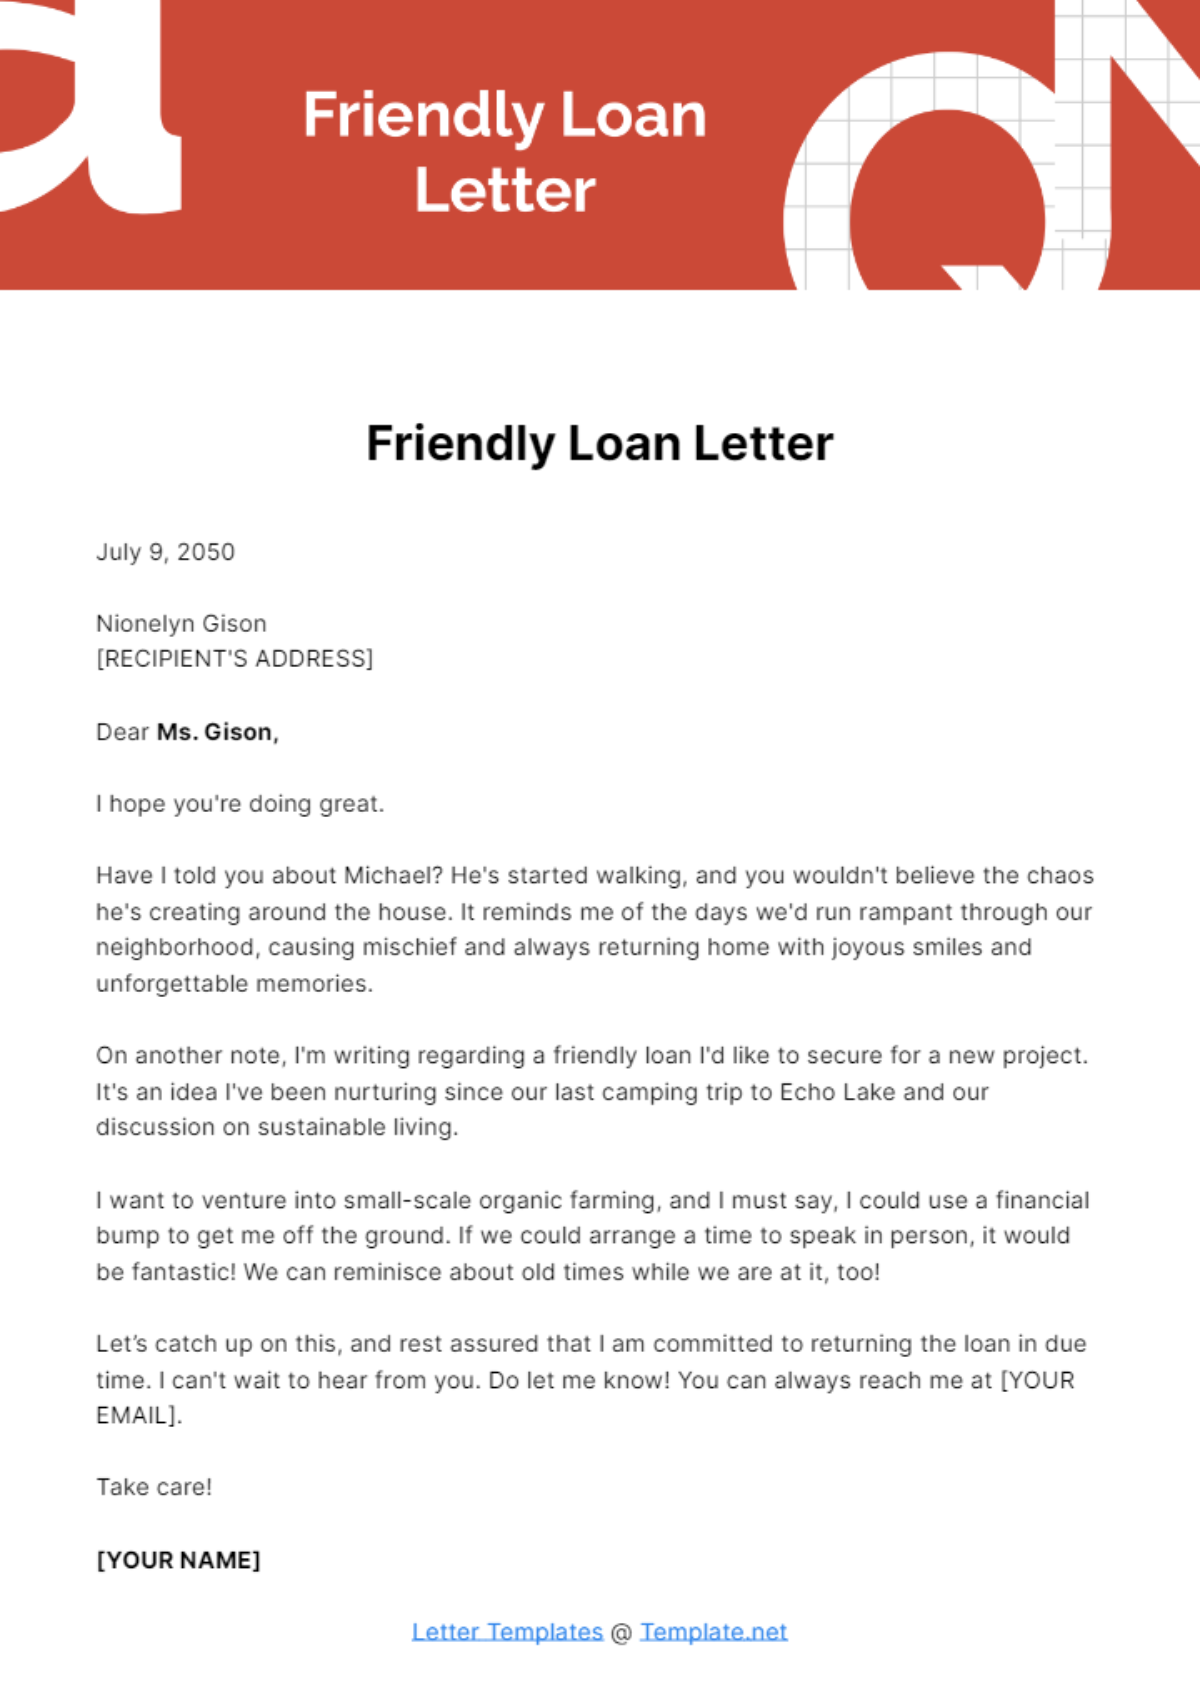 Free Friendly Loan Letter Template